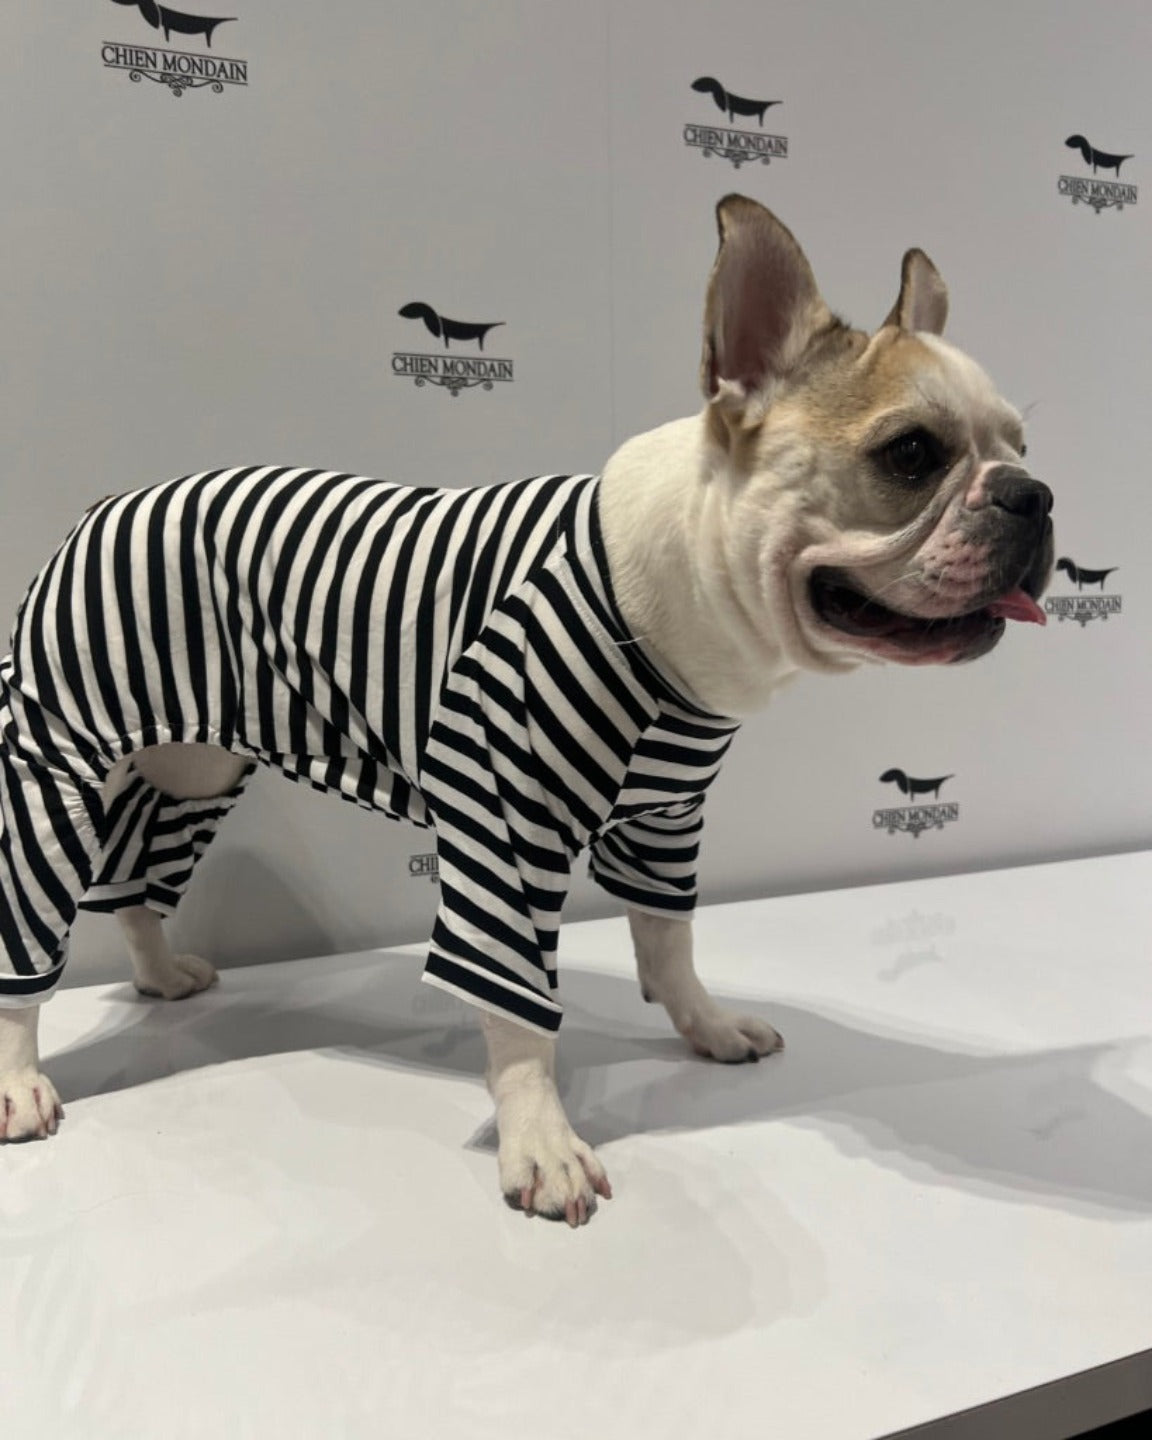 Black and white striped dog pajamas